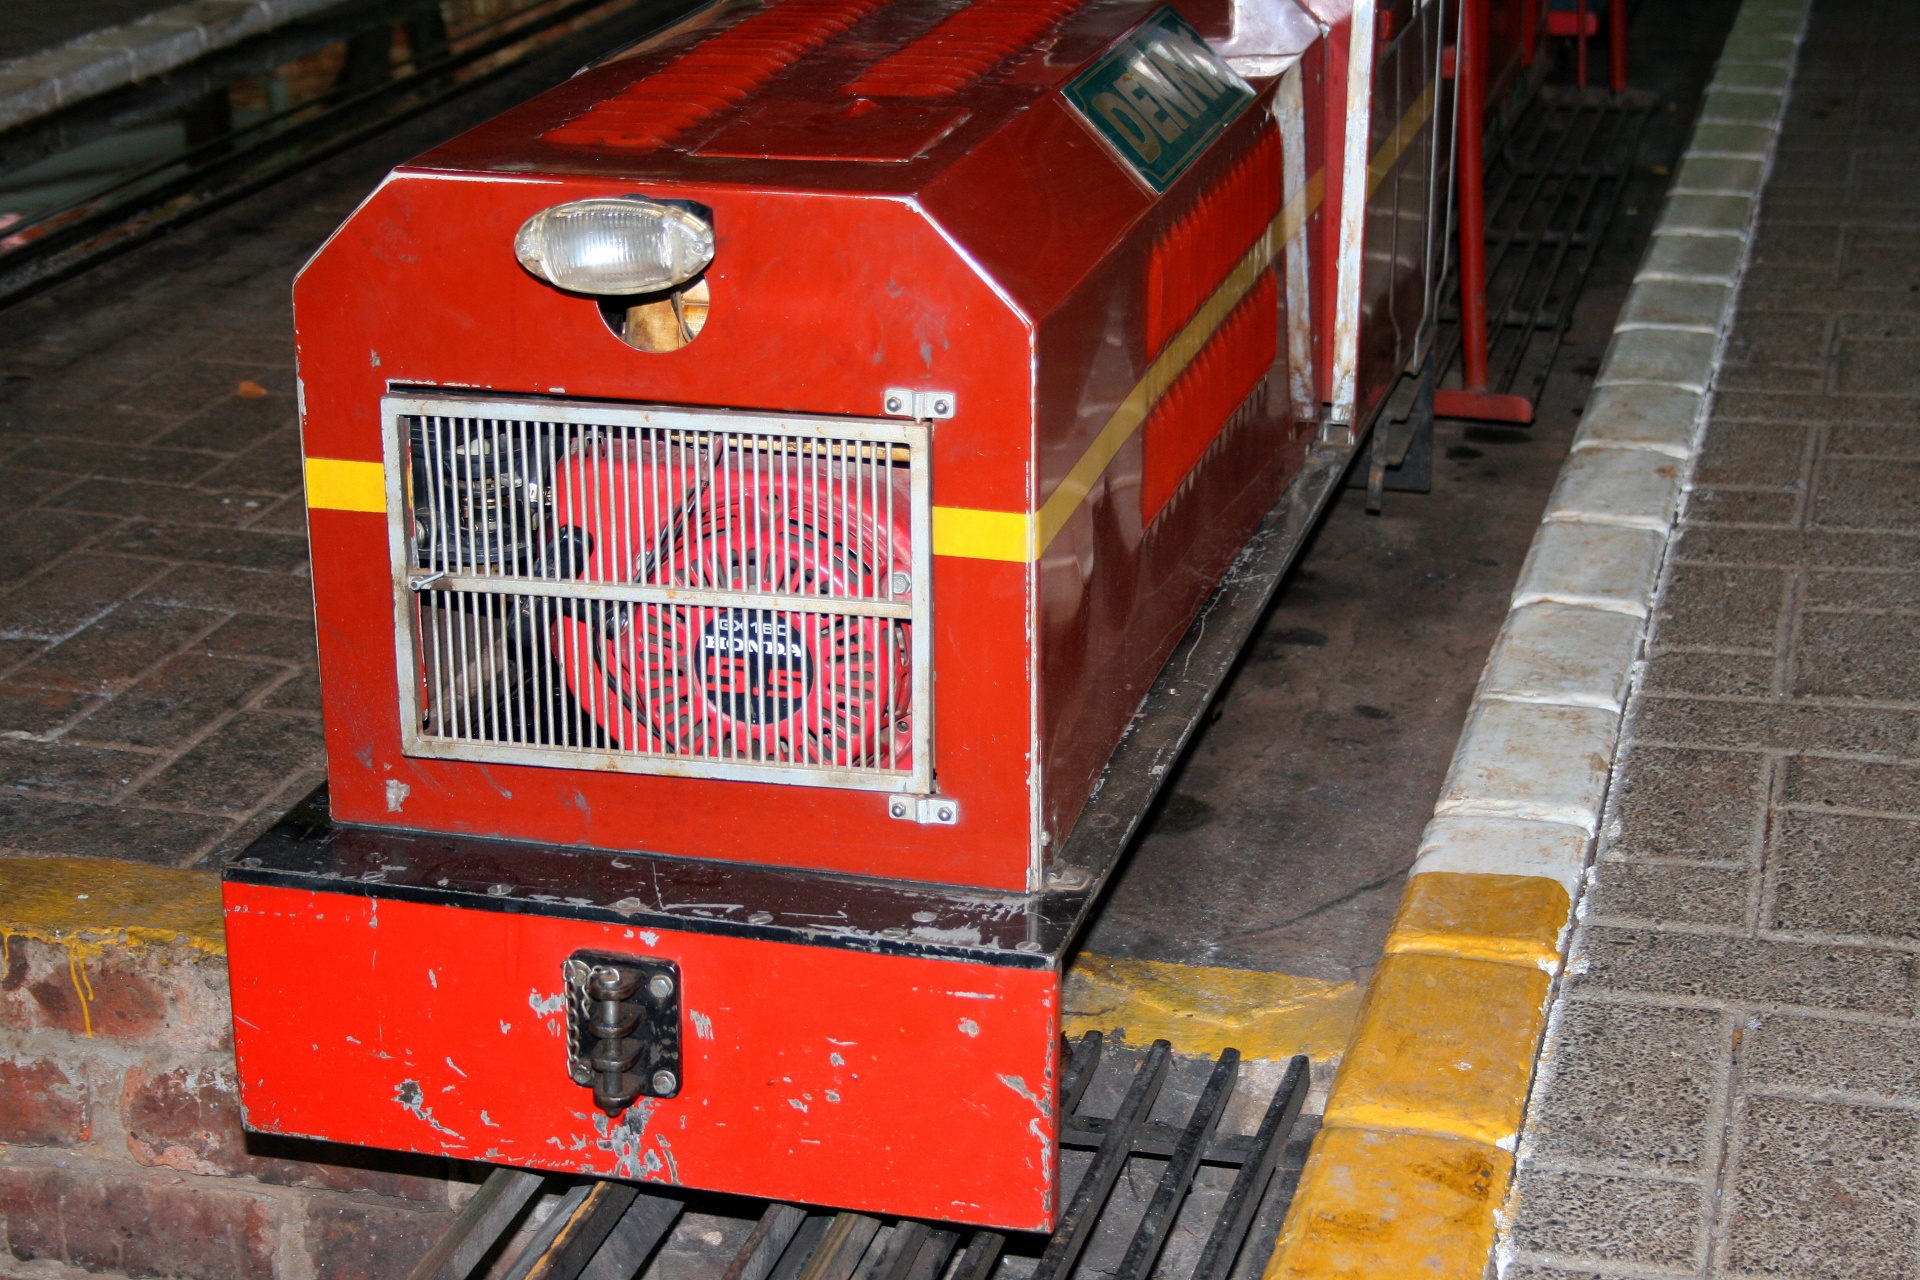 Motor do trem do modelo vermelho